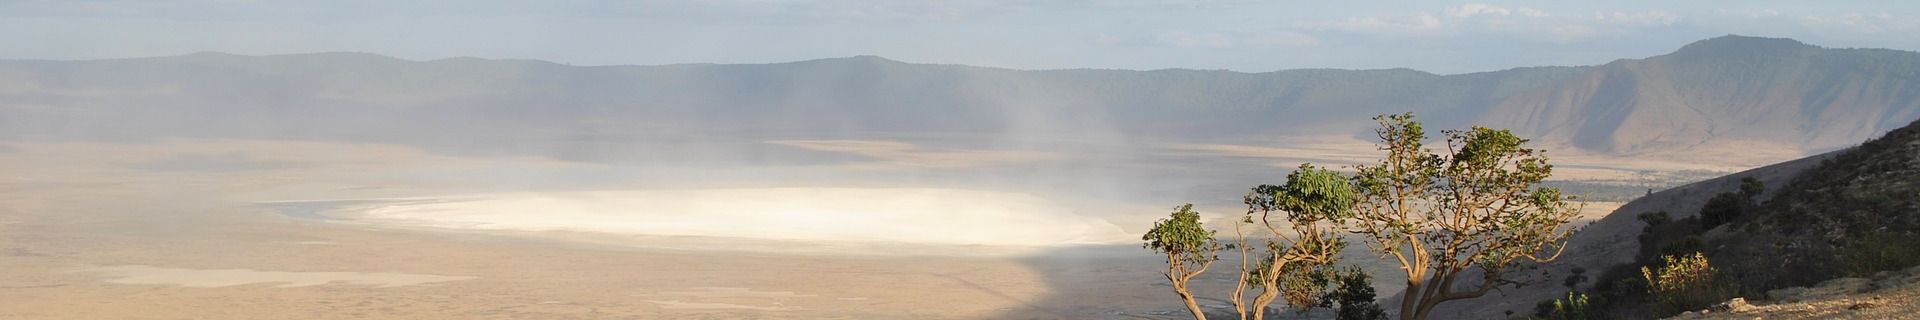 View of the Ngorongoro Caldera